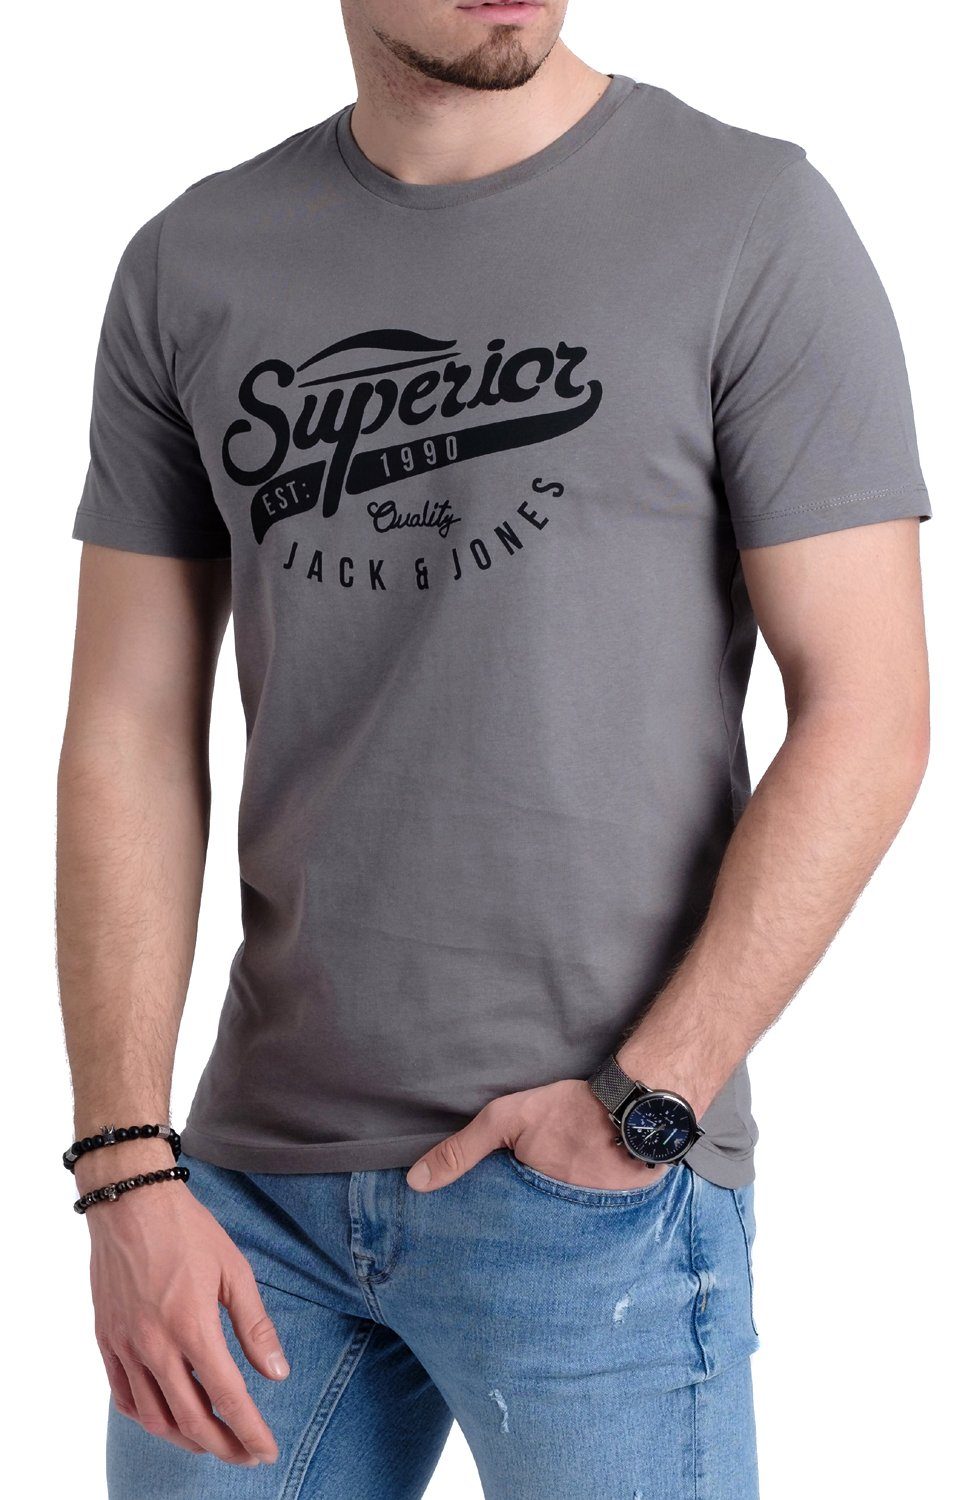 & Baumwolle Jones Jack mit aus T-Shirt Aufdruck Print-Shirt OPT19